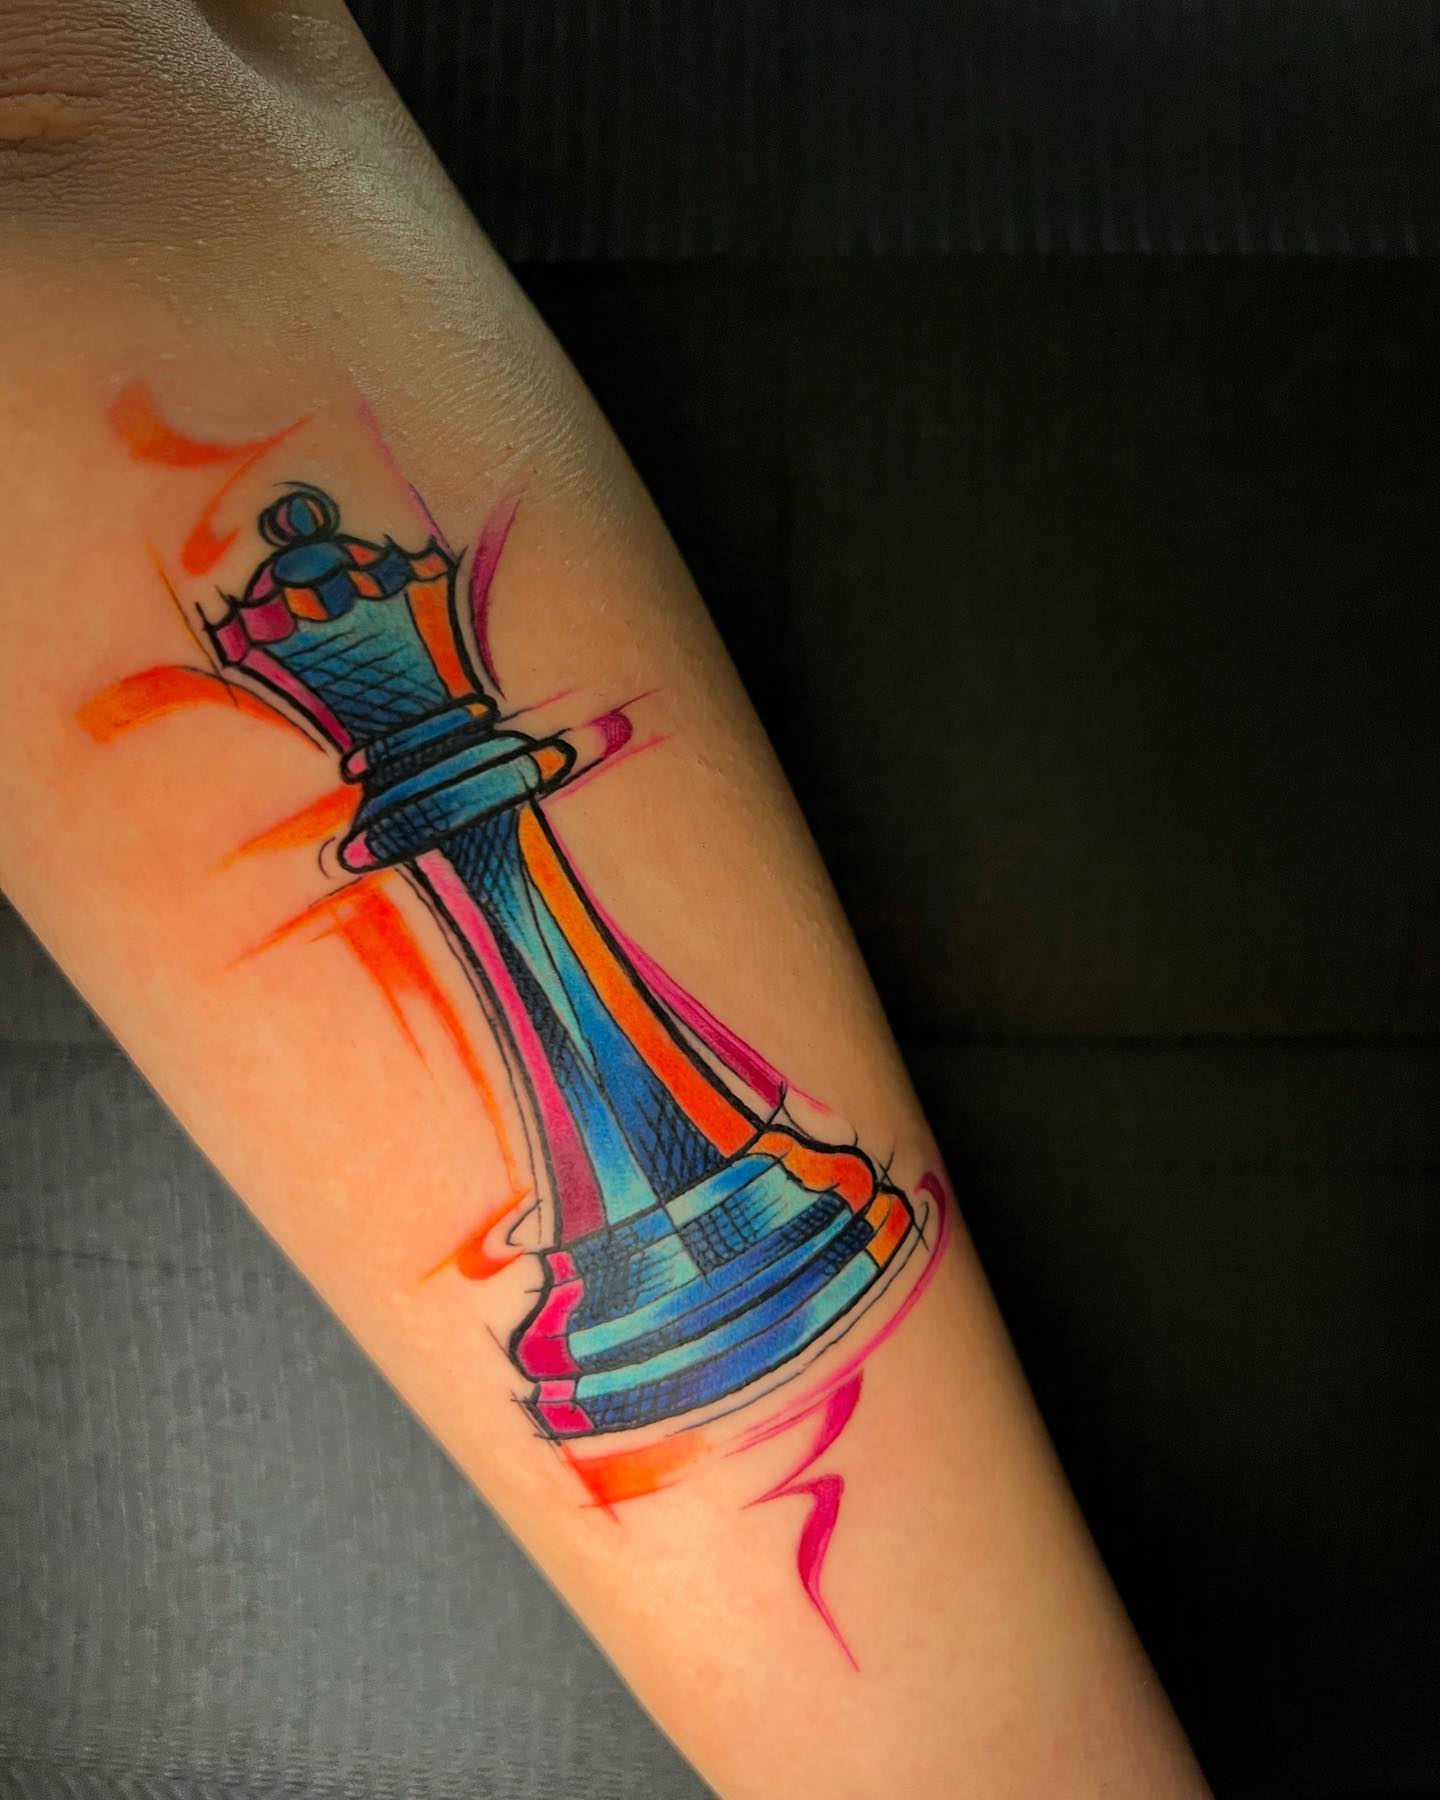 Tatuaje de ajedrez retro brillante.